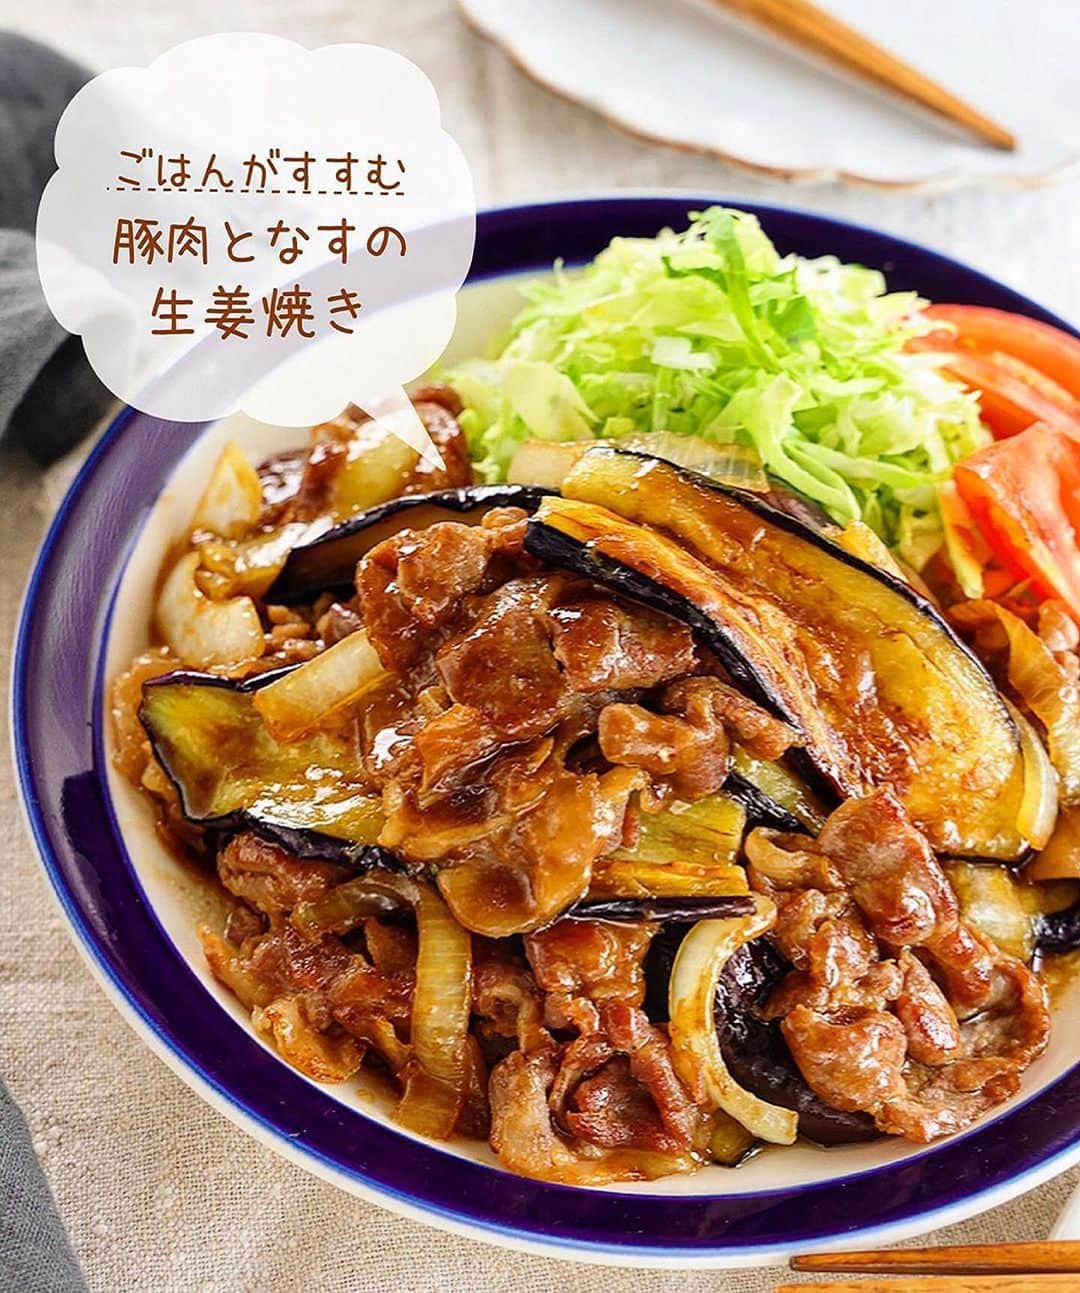 Mizuki【料理ブロガー・簡単レシピ】さんのインスタグラム写真 - (Mizuki【料理ブロガー・簡単レシピ】Instagram)「・ボリューム満点💕 ⁡ ［#レシピ ］ ーーーーーーーーーーー ごはんがすすむ！ 豚肉となすの生姜焼き ーーーーーーーーーーー ⁡ ⁡ ⁡ おはようございます☺️ ⁡ 今日ご紹介させていただくのは \ 豚肉となすの生姜焼き / (再掲載🍆) ⁡ いつもの生姜焼きに なすを加えてボリュームアップ☝️ しっかり味の甘辛だれで がっつりごはんがすすみます💕 ⁡ お肉は生姜焼き用ではなく ''薄切り肉''でさっと火を通すと やわらかく仕上がりますよ〜✨ よかったらお試し下さいね😋 ⁡ ＊豚薄切り肉は、肩ロース、バラ こま、などなんでもOK♩ (おすすめは肩ロースです✨) ⁡ ⁡ ⁡ 💬💬💬 謎の暮らしアカウント作りました🏠 変なライブはこっちでやってます🤫 →(@mizuki_kurashi ) ⁡ ⁡ 【簡単・時短・節約レシピ更新中🔻】 @mizuki_31cafe ⁡ ⁡ ⁡ ＿＿＿＿＿＿＿＿＿＿＿＿＿＿＿＿＿＿＿ 【2人分】 豚薄切り肉...200g 薄力粉...適量 なす...2本 玉ねぎ...1/2個 サラダ油...大2 ●醤油・酒...各大2 ●砂糖・みりん...各大1 ●生姜チューブ...3cm ⁡ 1.なすは縦8mm幅に切り、水に3分晒して水気を拭く。豚肉は適当に広げて薄く薄力粉をまぶす。玉ねぎは横1cm幅に切る。●は合わせておく。 2.フライパンにサラダ油を中火で熱し、なすを両面色よく焼いて取り出す。(＊ポイント参照) 3.そのままのフライパンで豚肉と玉ねぎを炒め、火が通ったら2と●を加えて煮からめる。 ￣￣￣￣￣￣￣￣￣￣￣￣￣￣￣￣￣￣￣ ⁡ ⁡ ⁡ 《ポイント》 ♦︎豚肉は薄切り肉ならなんでもOK！個人的に一押しは肩ロース薄切り肉(又は切り落とし肉)です♩やわらかく脂のバランスも最高！ ♦︎玉ねぎは横薄切りにするとしんなりしやすく、他の食材と馴染みます♩ ♦︎なすは油を吸いますが、じっくり焼いていると油が出てくるので、その油で豚肉と玉ねぎを炒めます♩(もし油が足りない場合は足してもOKです♩) ⁡ ⁡ ⁡ ⁡ ⁡ ⁡ 𖤣𖥧𖥣𖡡𖥧𖤣✨ 愛用している調理器具や器などは #楽天ROOMに載せてます ‎𐩢𐩺 (ハイライトから飛べます🛍) ⁡ ⁡ ⁡ ⁡ ⁡ ⁡ 🔶全国の書店・ネット書店で発売中🔶 ⁡ ✼••┈┈┈┈┈••✼••┈┈┈┈┈••✼ 今日のごはんこれに決まり！ ‎𓊆#Mizukiのレシピノート 500品𓊇 ✼••┈┈┈┈┈••✼••┈┈┈┈┈••✼ ⁡ ˗ˏˋ おかげさまで25万部突破 ˎˊ˗ 料理レシピ本大賞準大賞を受賞しました🙇‍♀️ ⁡ 6000点の中からレシピを厳選し まさかの【500レシピ掲載】❣️ 肉や魚のメインおかずはもちろん 副菜、丼、麺、スープ、お菓子 ハレの日のレシピ、鍋のレシピまで 全てこの一冊で完結𓌉◯𓇋✨ ⁡ ⁡ ⁡ ⁡ ✼••┈┈┈••✼••┈┈┈••✼ Mizukiのカンタン手作り   𓊆 #3時のおやつ 𓊇 ✼••┈┈┈••✼••┈┈┈••✼ ⁡ 『3分クッキング』で連載中の 「Mizukiのカンタン手作り」 ‎4年分のおやつが1冊になりました！ ❝オーブンなしで❞ 身近な材料と道具でできる 簡単、手軽なおやつを80品🍪 ⁡ ⁡ ⁡ ⁡ ⁡ ⁡ #豚肉となすの生姜焼きm #なすレシピ #なす #生姜焼き #なす  #豚肉 #ごはんがすすむ #お弁当 #お弁当おかず #節約料理 #簡単料理  #時短料理 #料理 #mizukiレシピ  #アルモンデ #時短レシピ #節約レシピ #簡単レシピ」5月15日 6時30分 - mizuki_31cafe